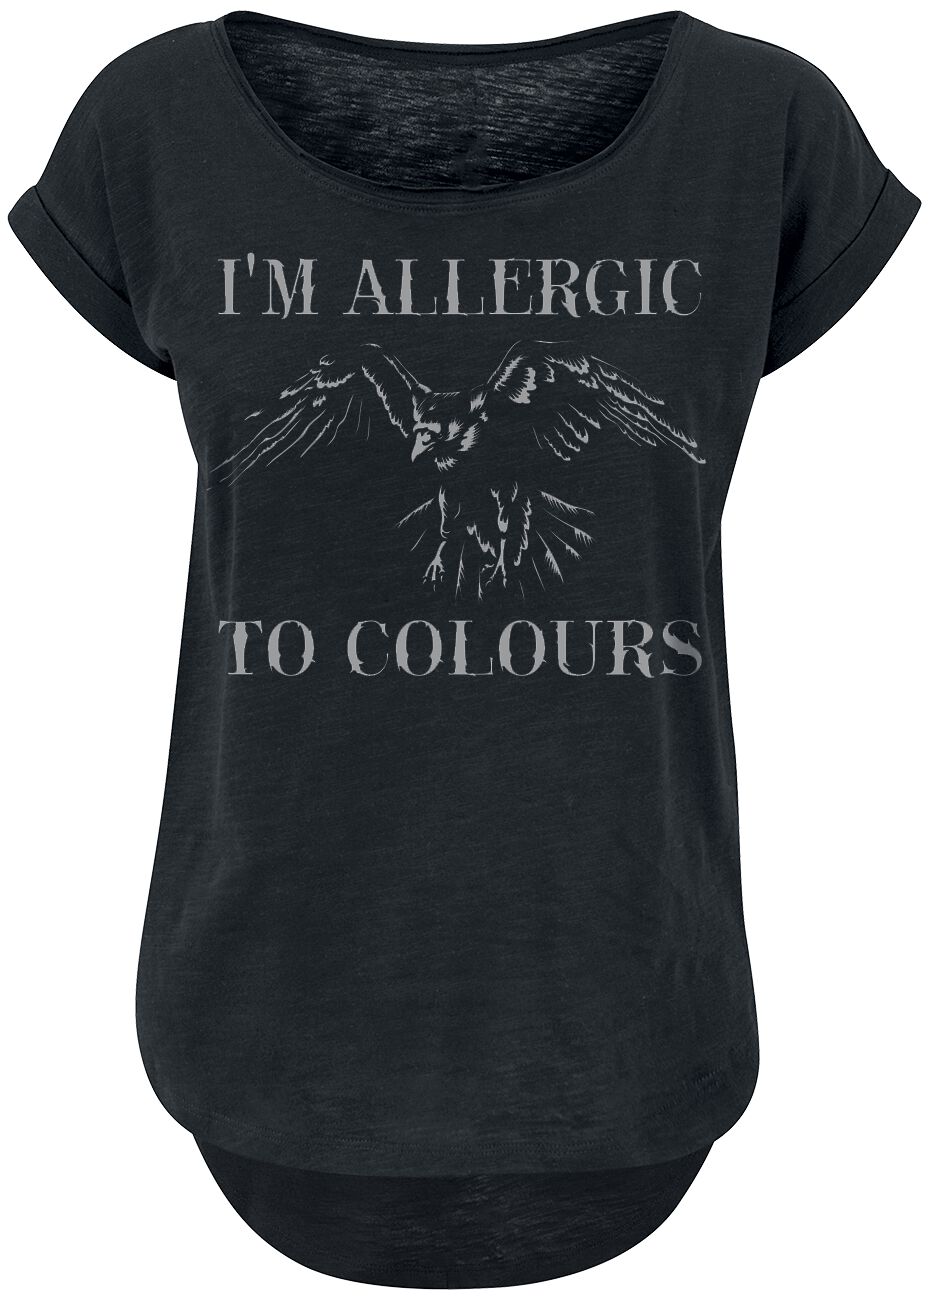 T-Shirt Manches courtes Fun de Slogans - Allergic To Colours - XS à 5XL - pour Femme - noir